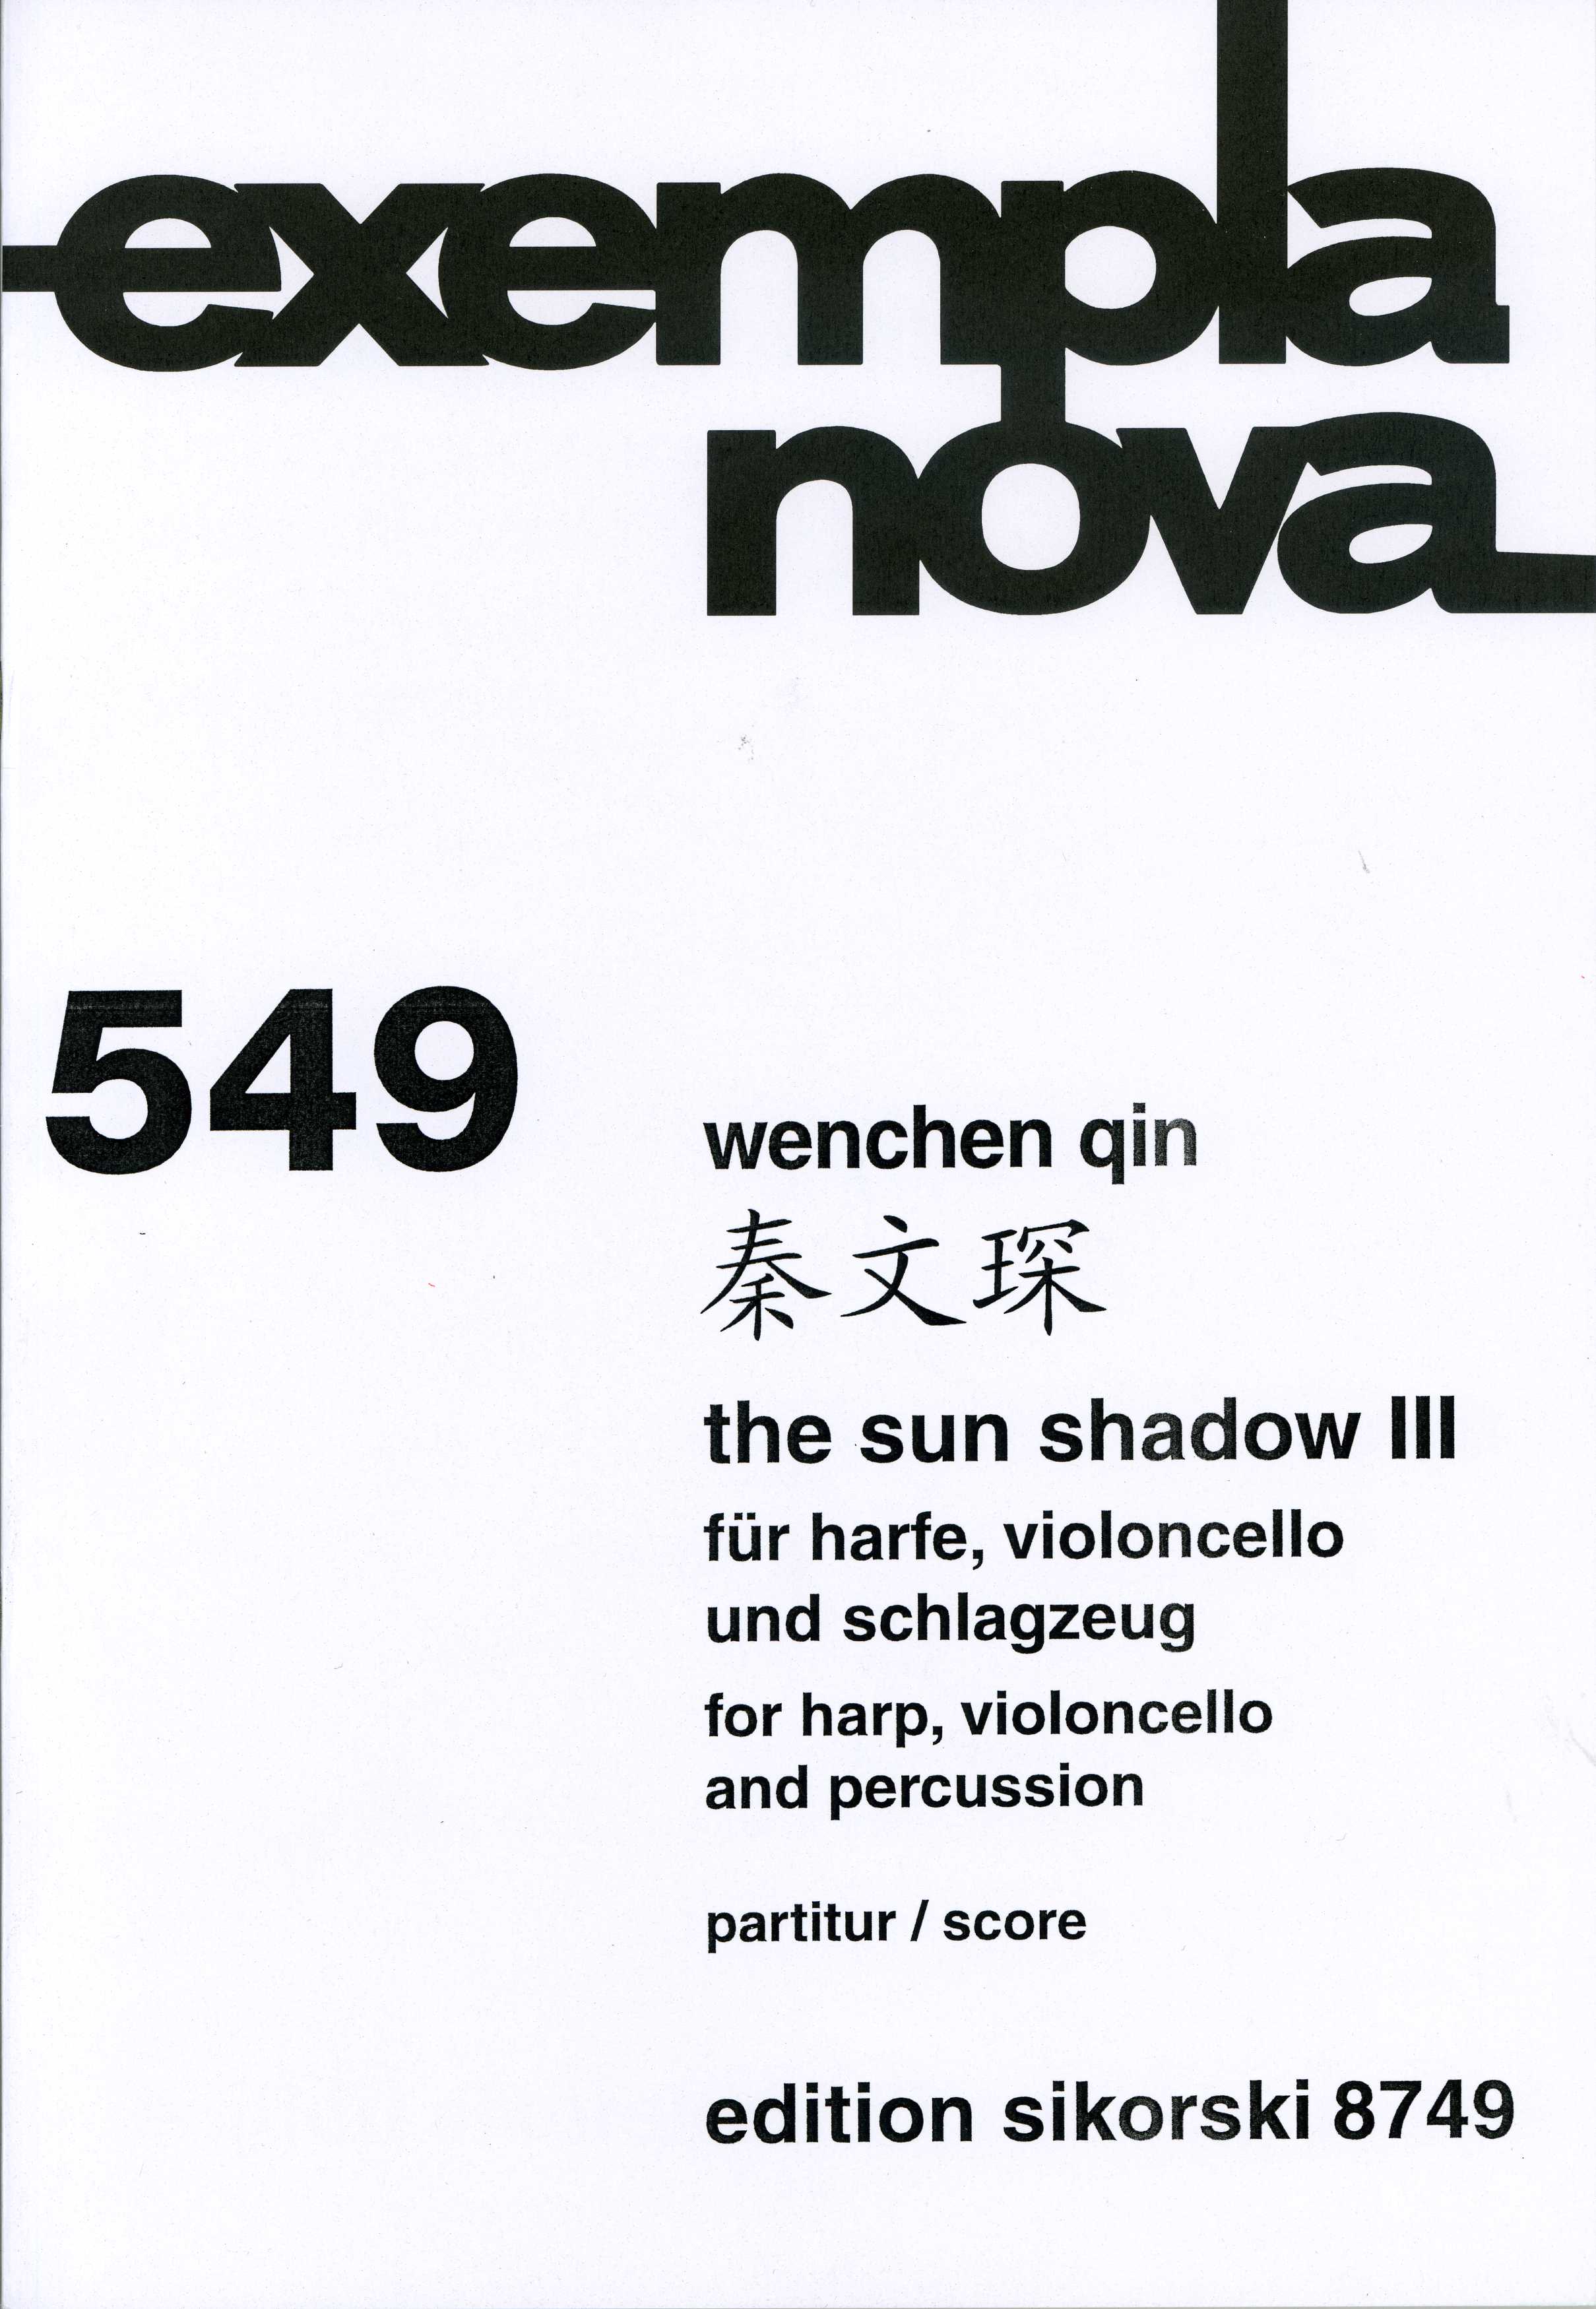 The Sun Shadow 3